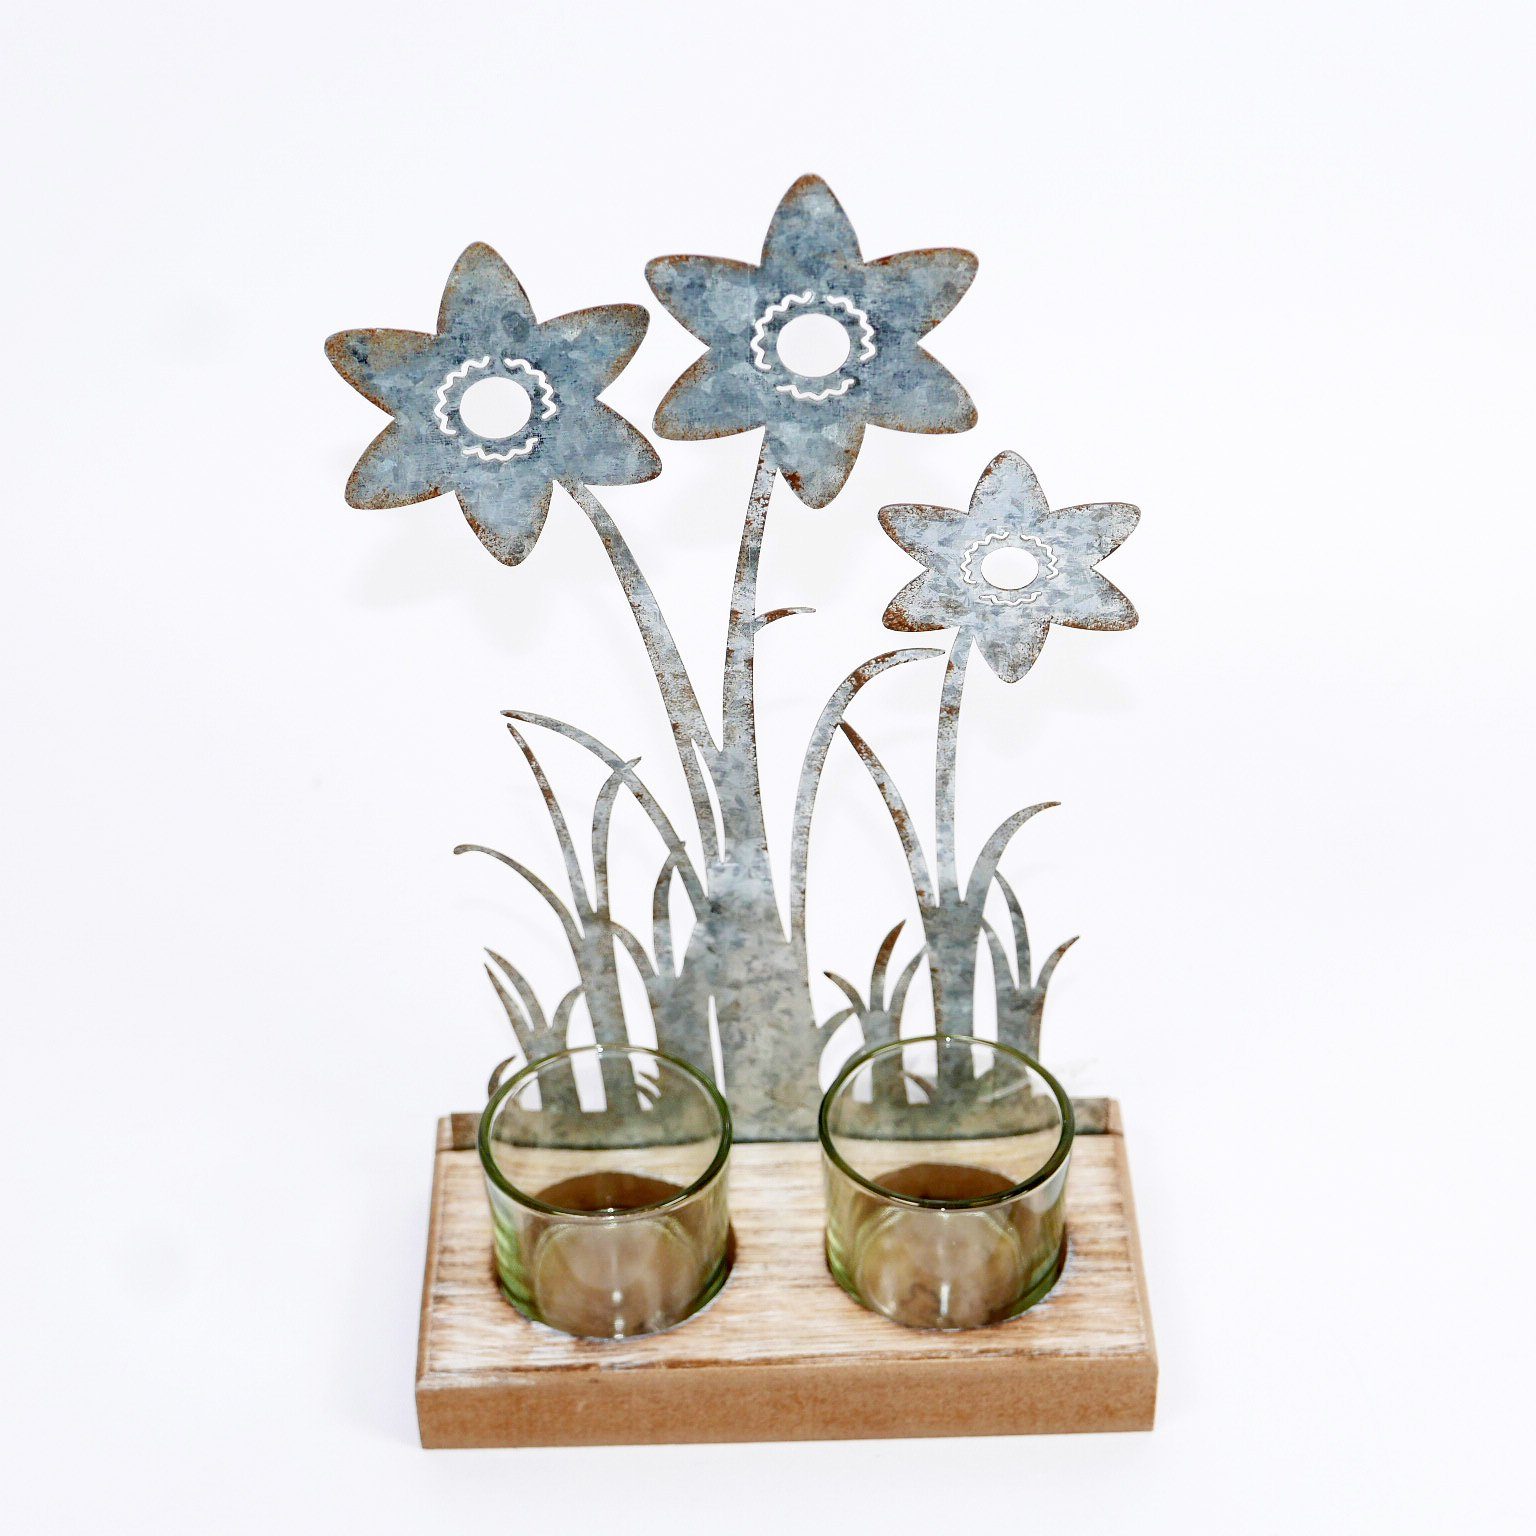 Beliebte Designs B&S Teelichthalter Teelichtglas 2er auf H 23 Metall Blumenverzierung - cm Holzsockel aus